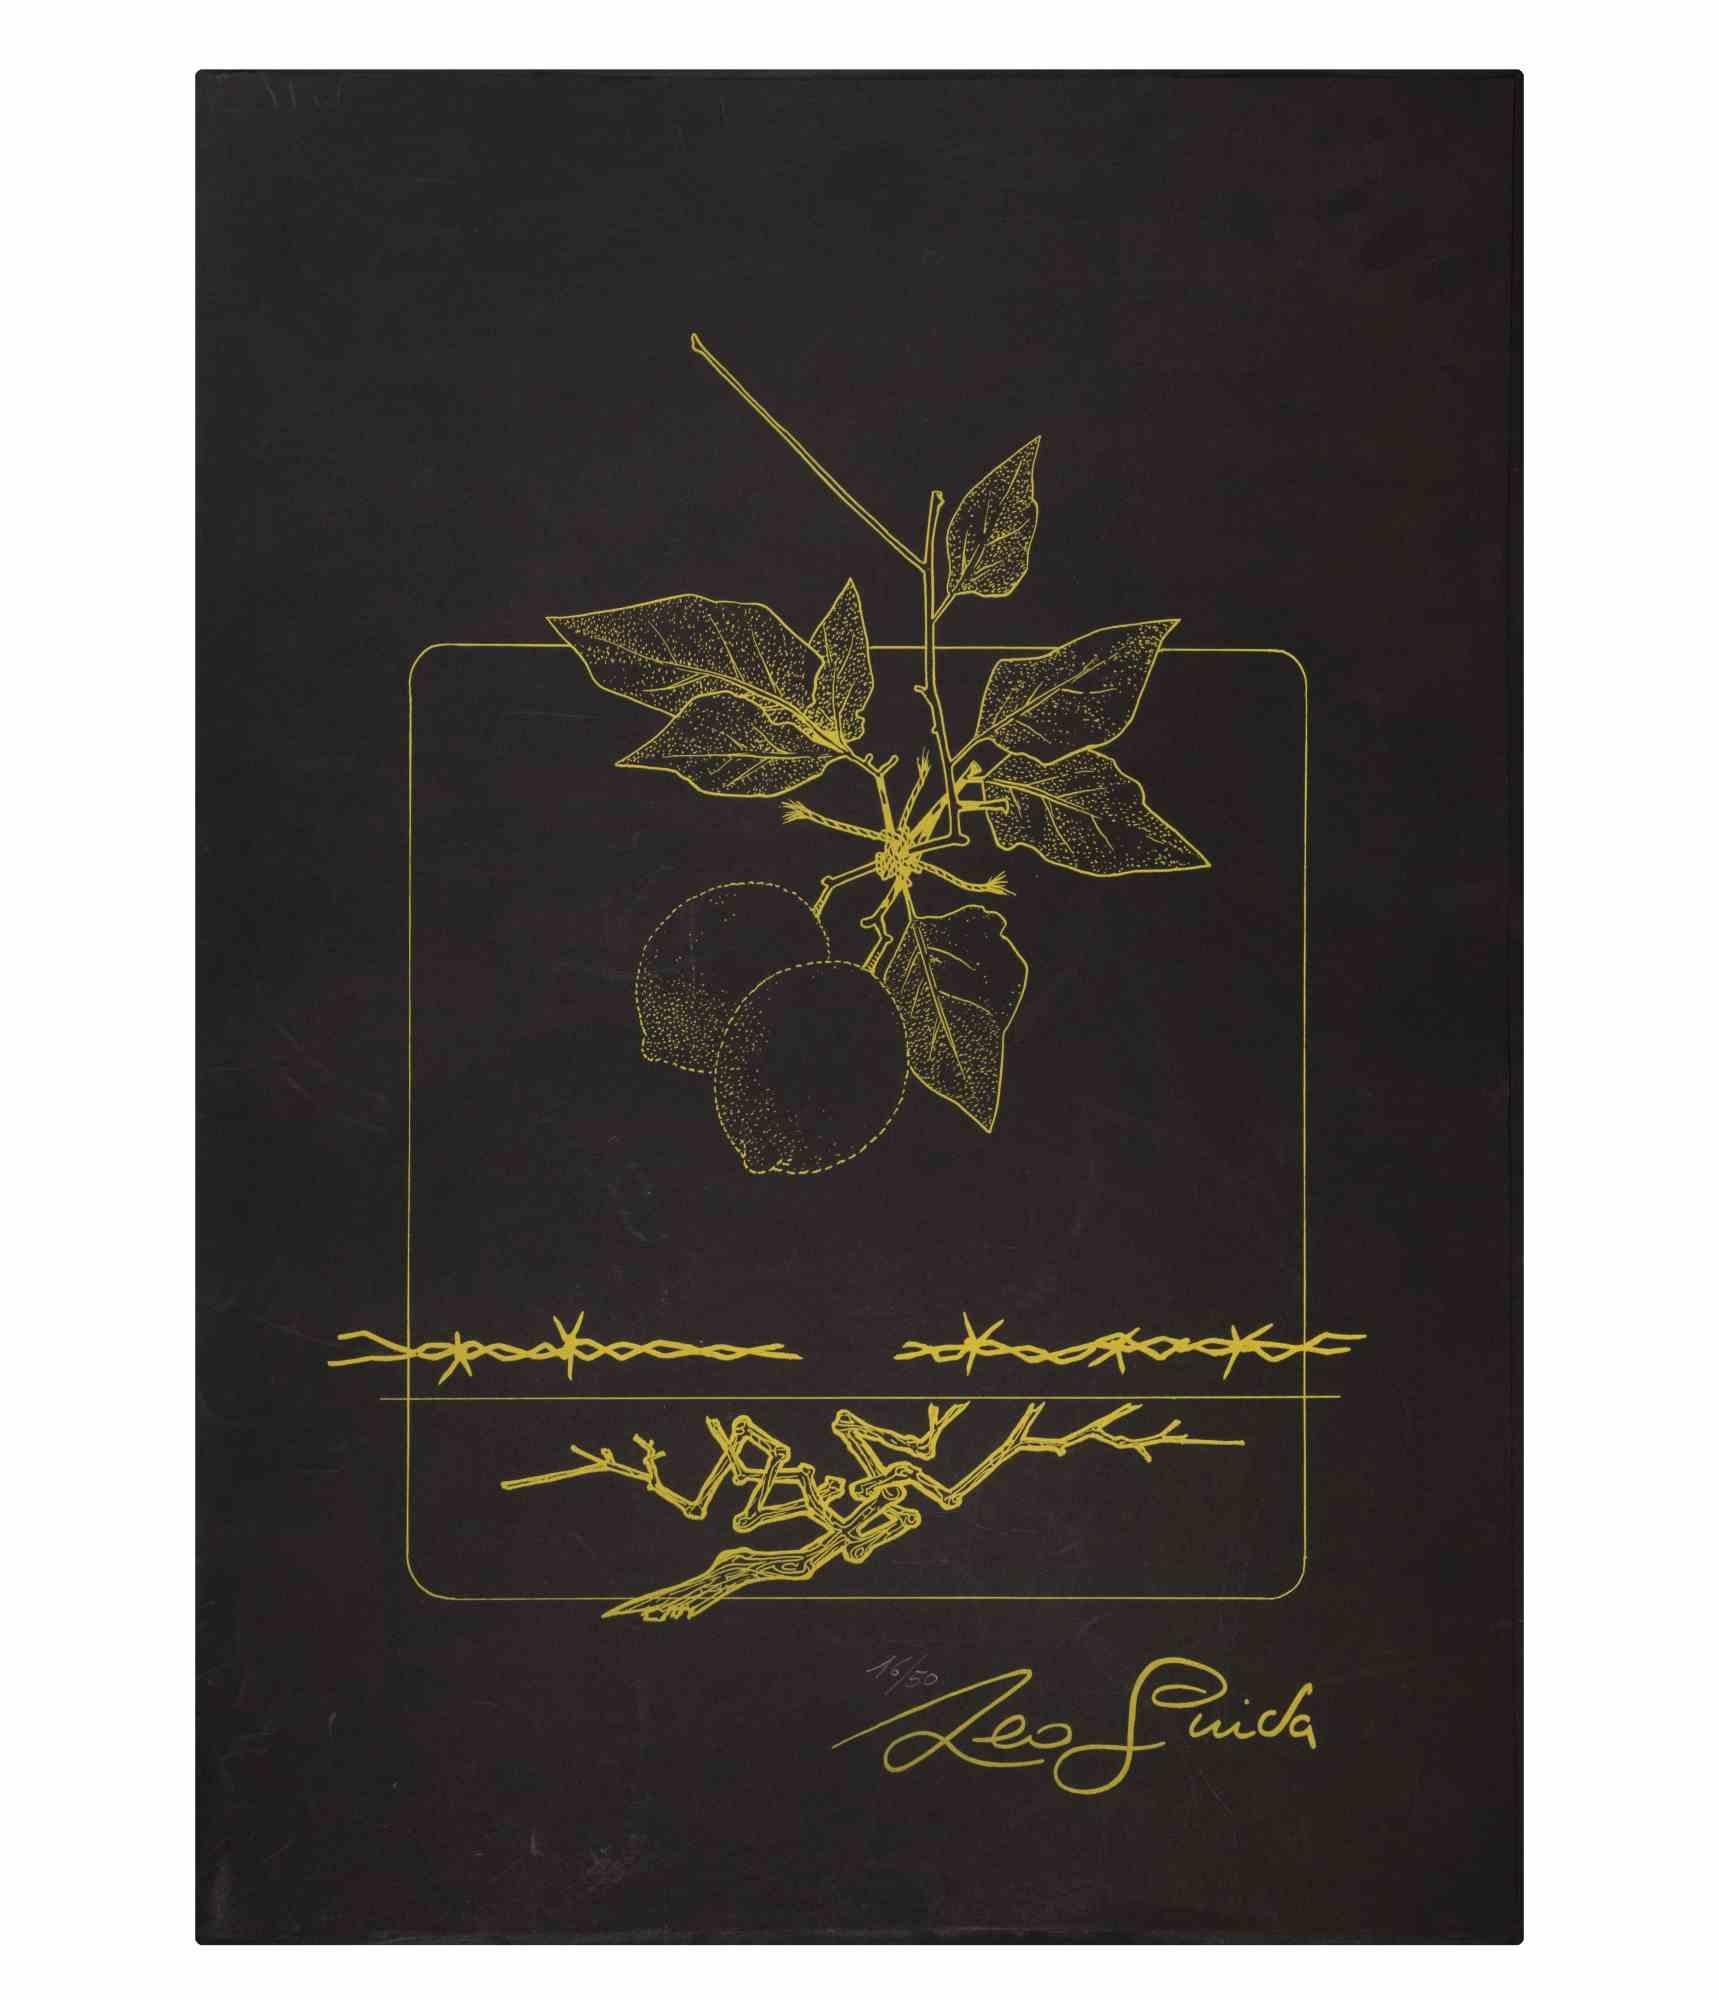 Still Life ist ein Kunstwerk, das 1976 von dem italienischen Künstler AM Contemporary geschaffen wurde.  Leo Guida  (1992 - 2017).

Original-Siebdruck auf Karton, in einer attraktiven Mappe. 

Signiert auf der Platte unten rechts und nummeriert,